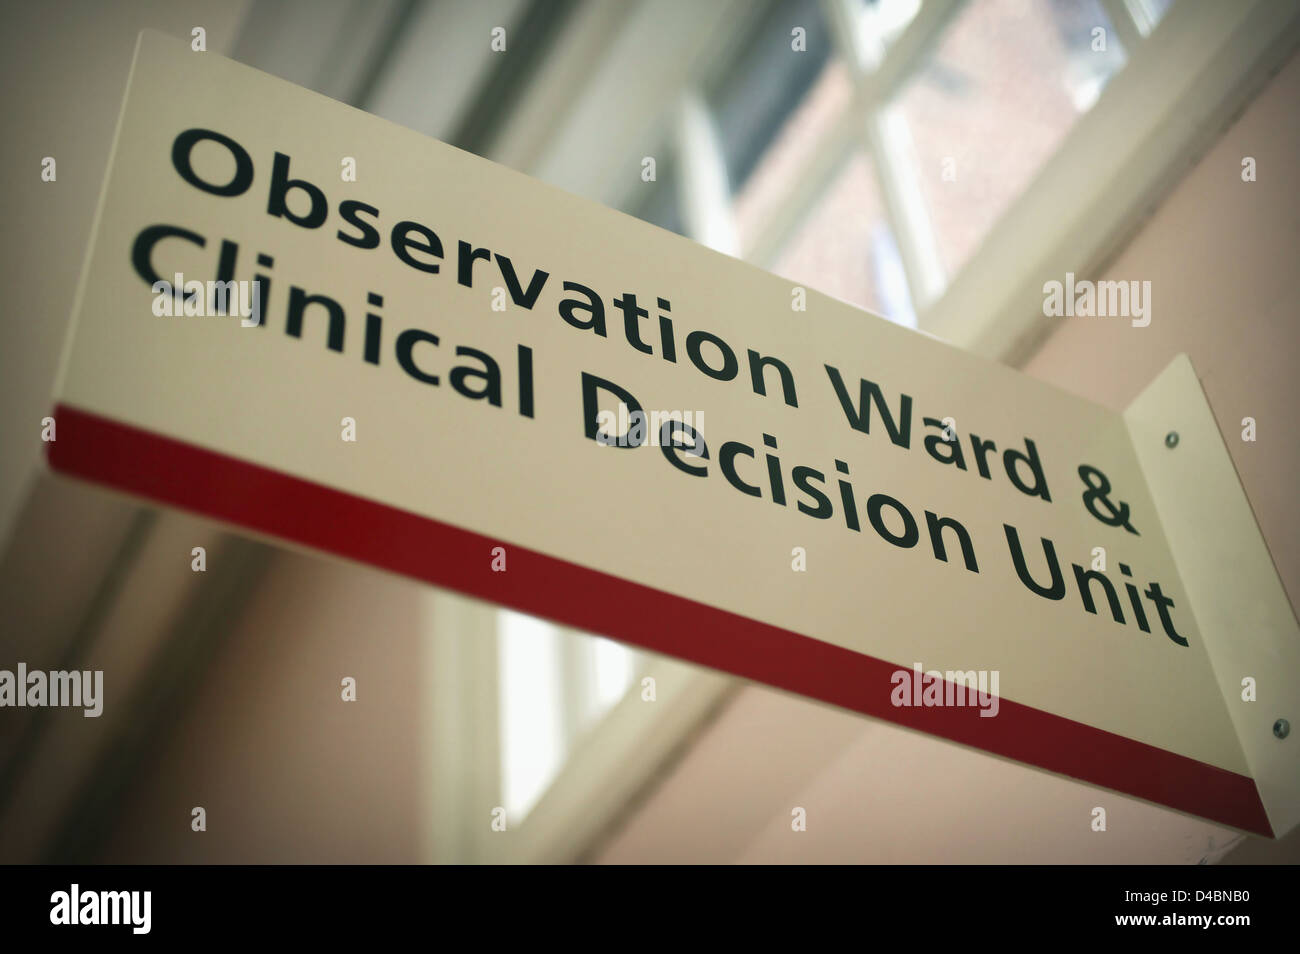 Signo del Hospital Ward y observación de la unidad de toma de decisiones clínicas Foto de stock